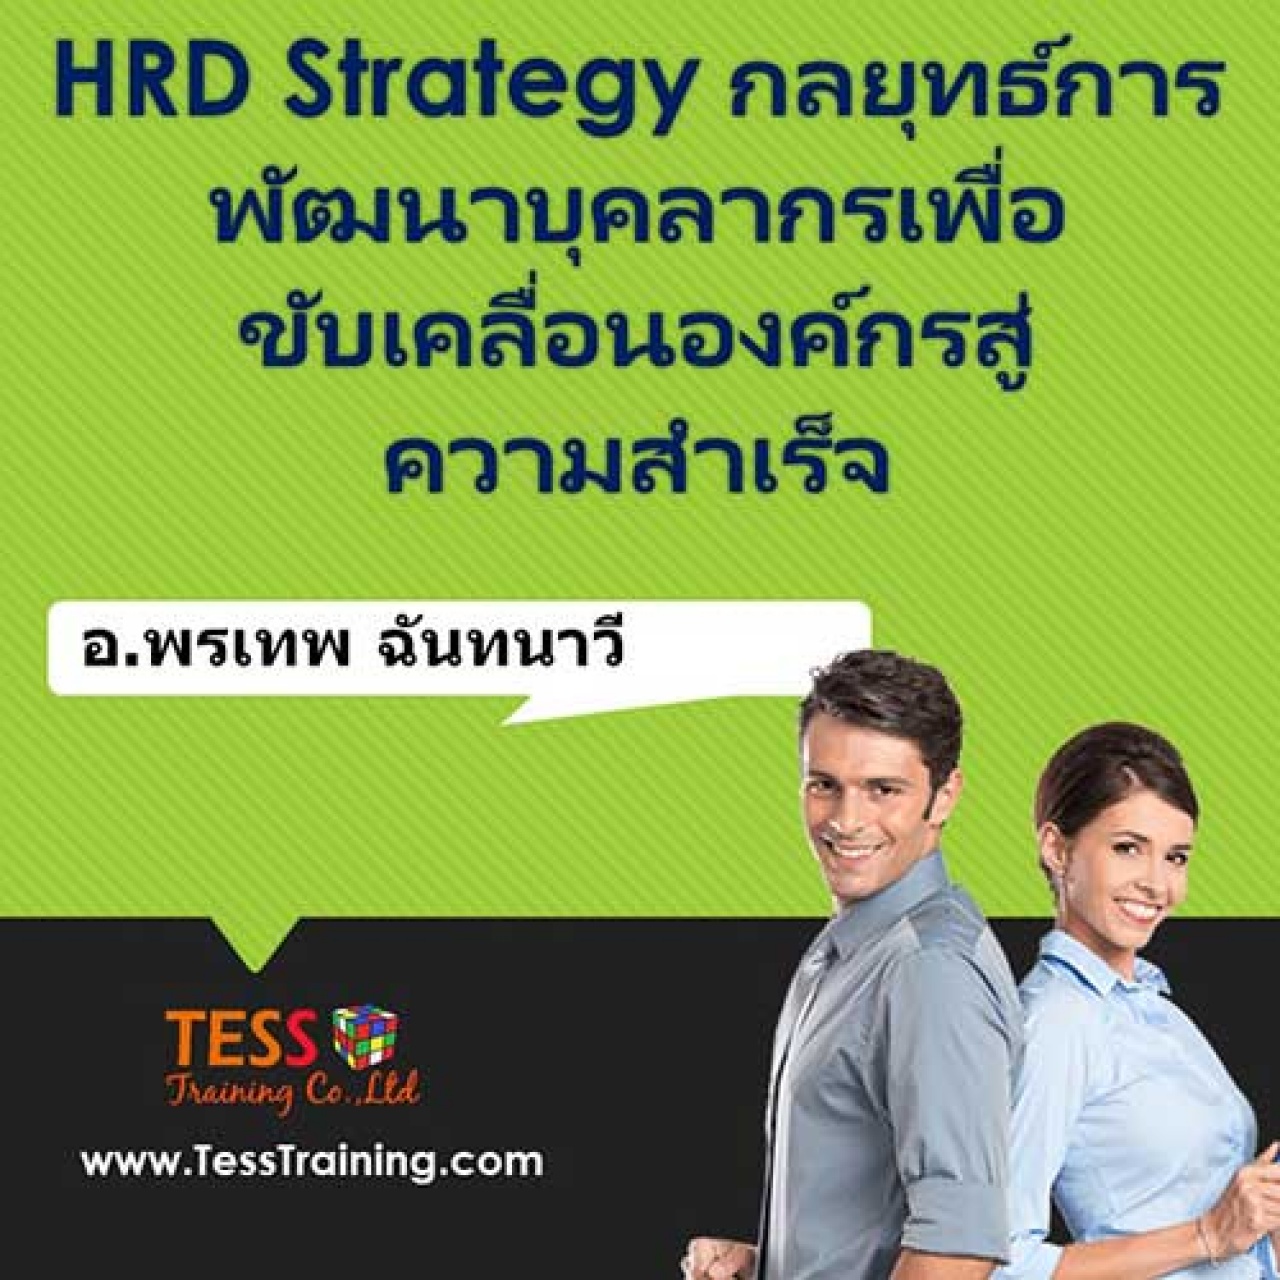 หลักสูตร HRD Strategy กลยุทธ์การพัฒนาบุคลากรเพื่อขับเคลื่อนองค์กรสู่ความสำเร็จ 15-11-61